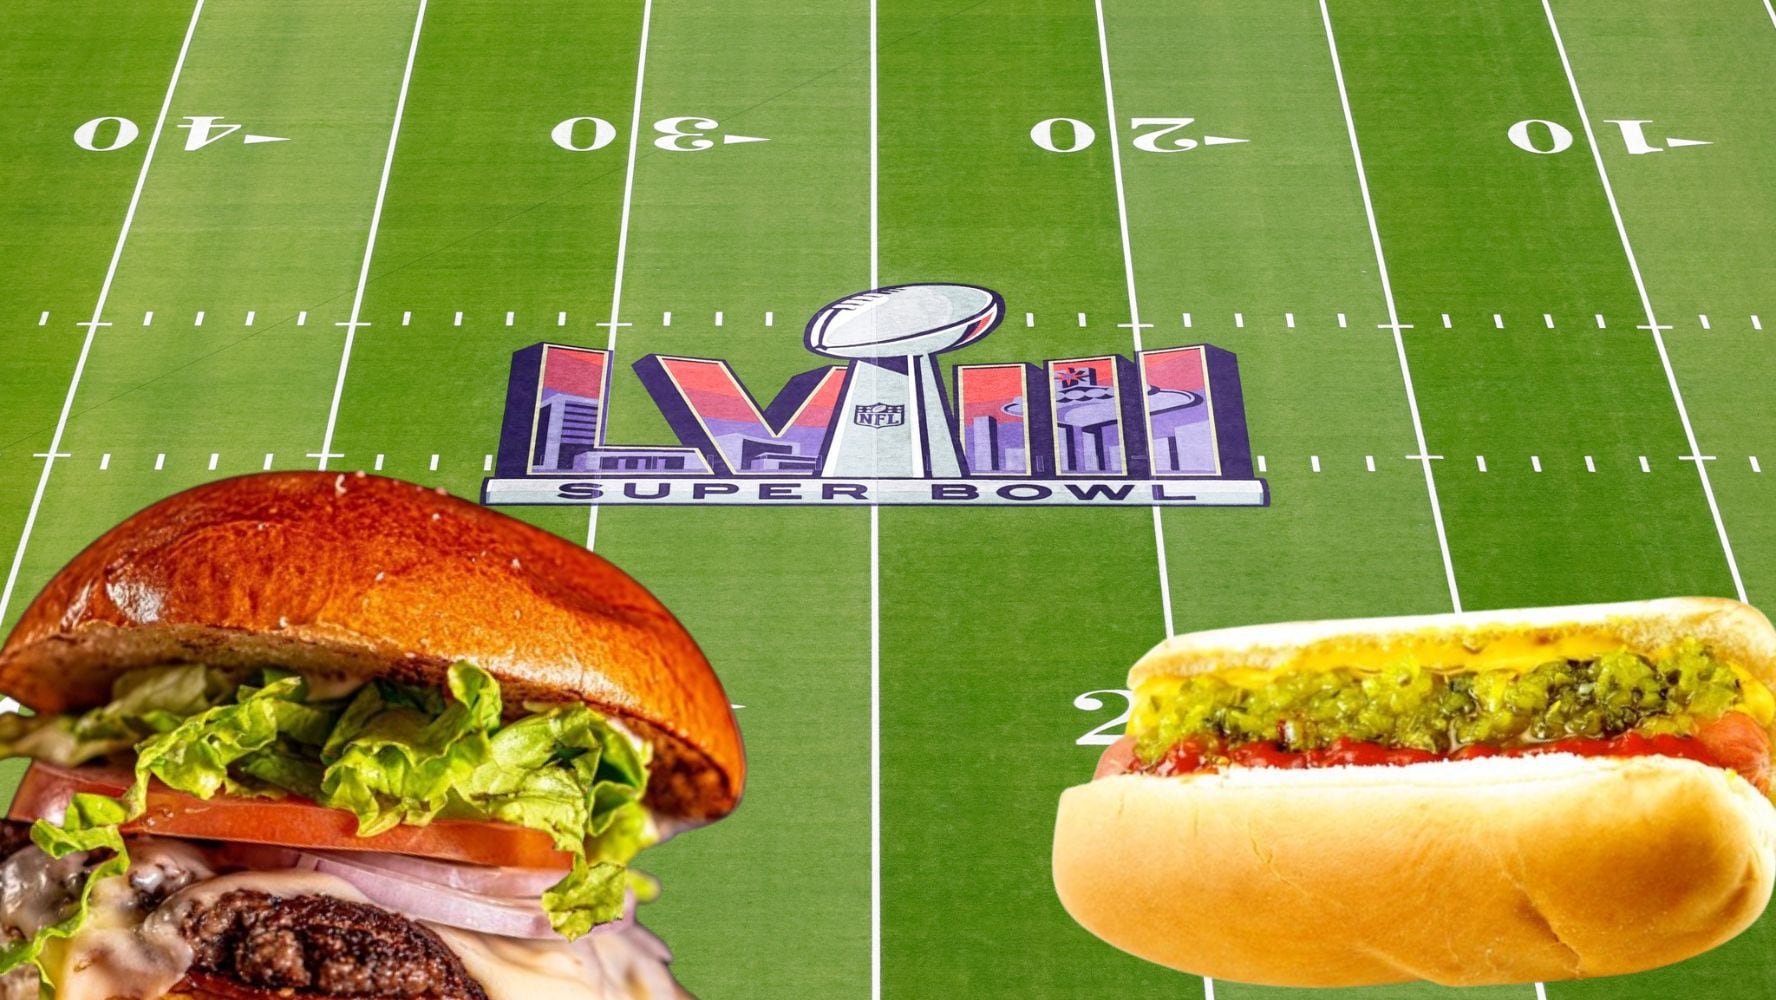 Este año, el Super Bowl ofrece una variedad de hamburguesas y hot-dogs para los asistentes. (Foto: Shutterstock / Wikimedia Commons / Facebook / @NFL)